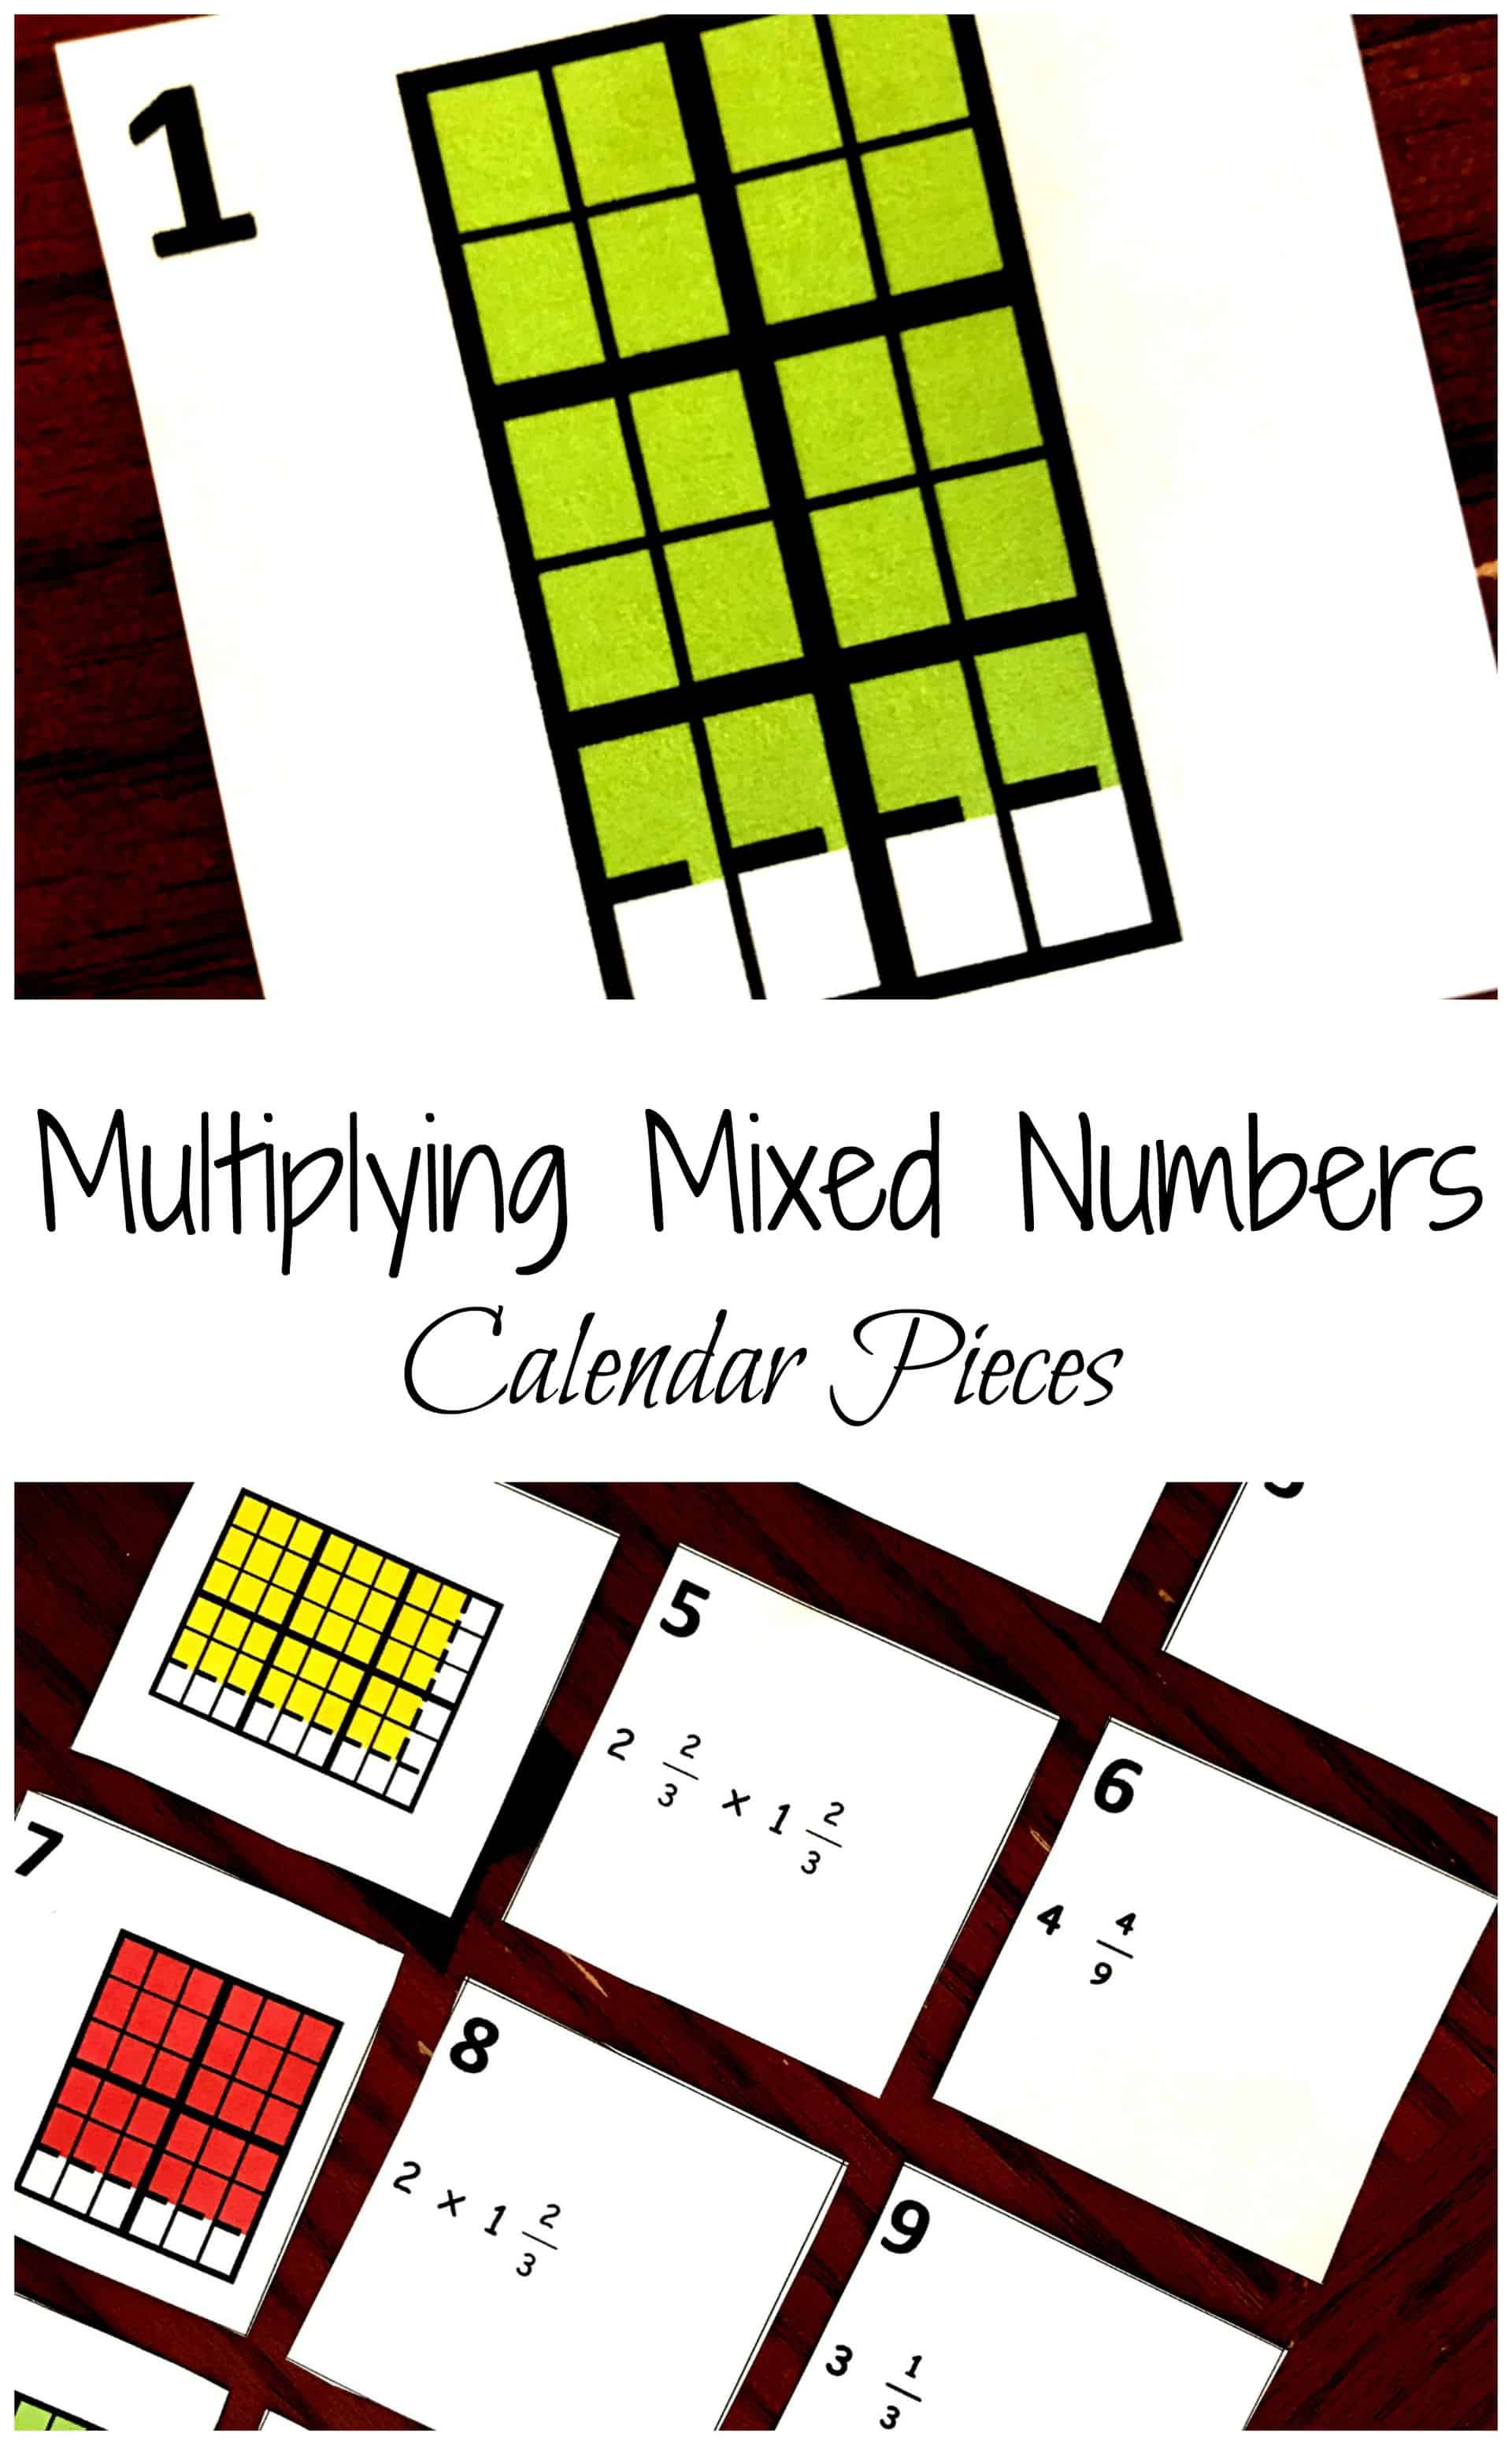 Calendar math for 5th grade calendar pieces.